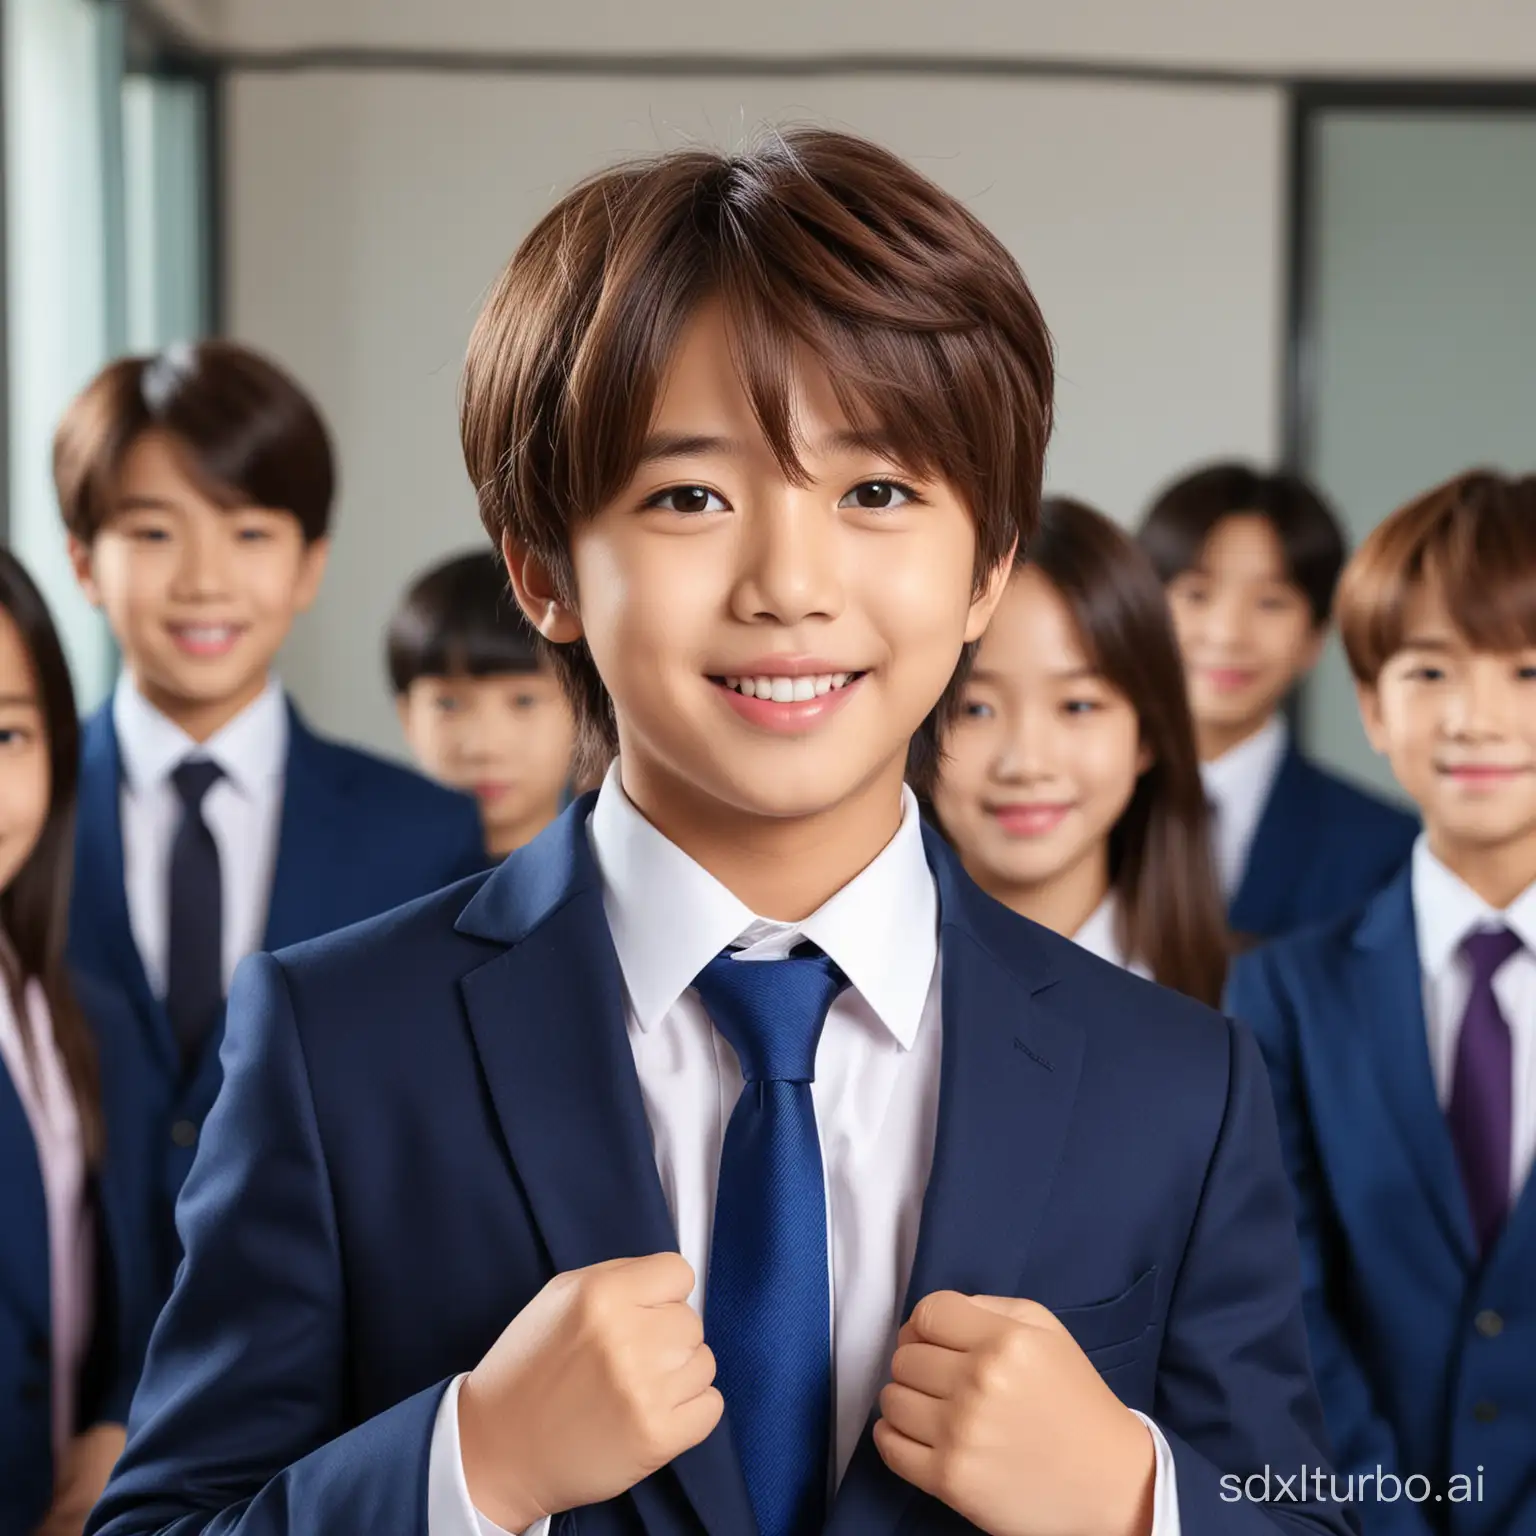 Smart-7YearOld-Boy-in-BTS-Jin-Inspired-Blue-Suit-Talks-to-Female-Teacher